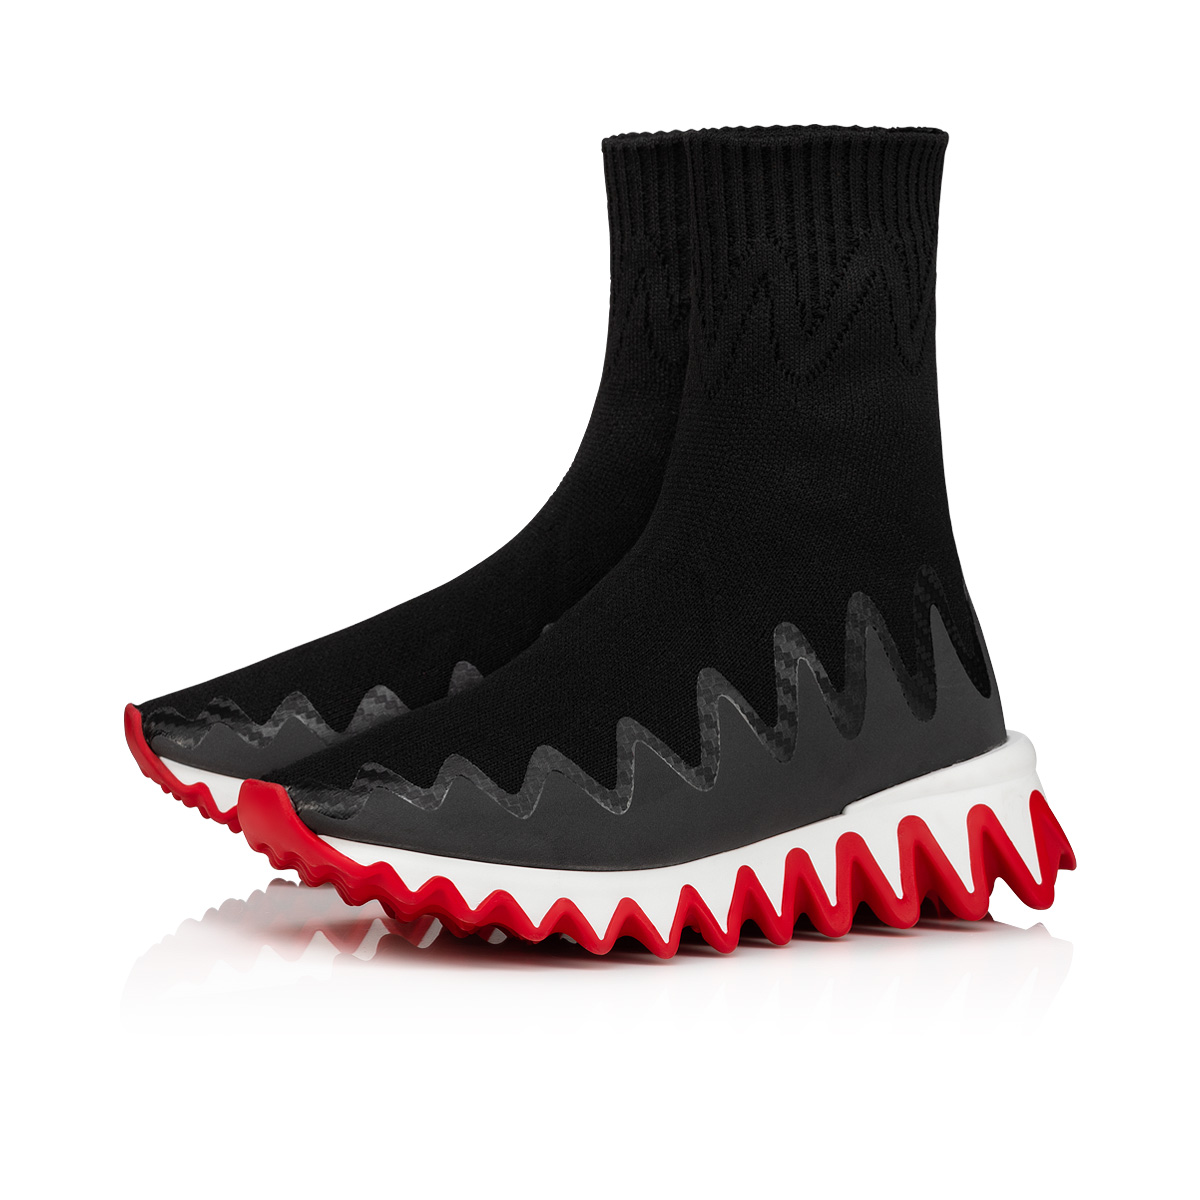 Christian Louboutin Mini Shark Black - Kids Unisexs Shoes - Size 32